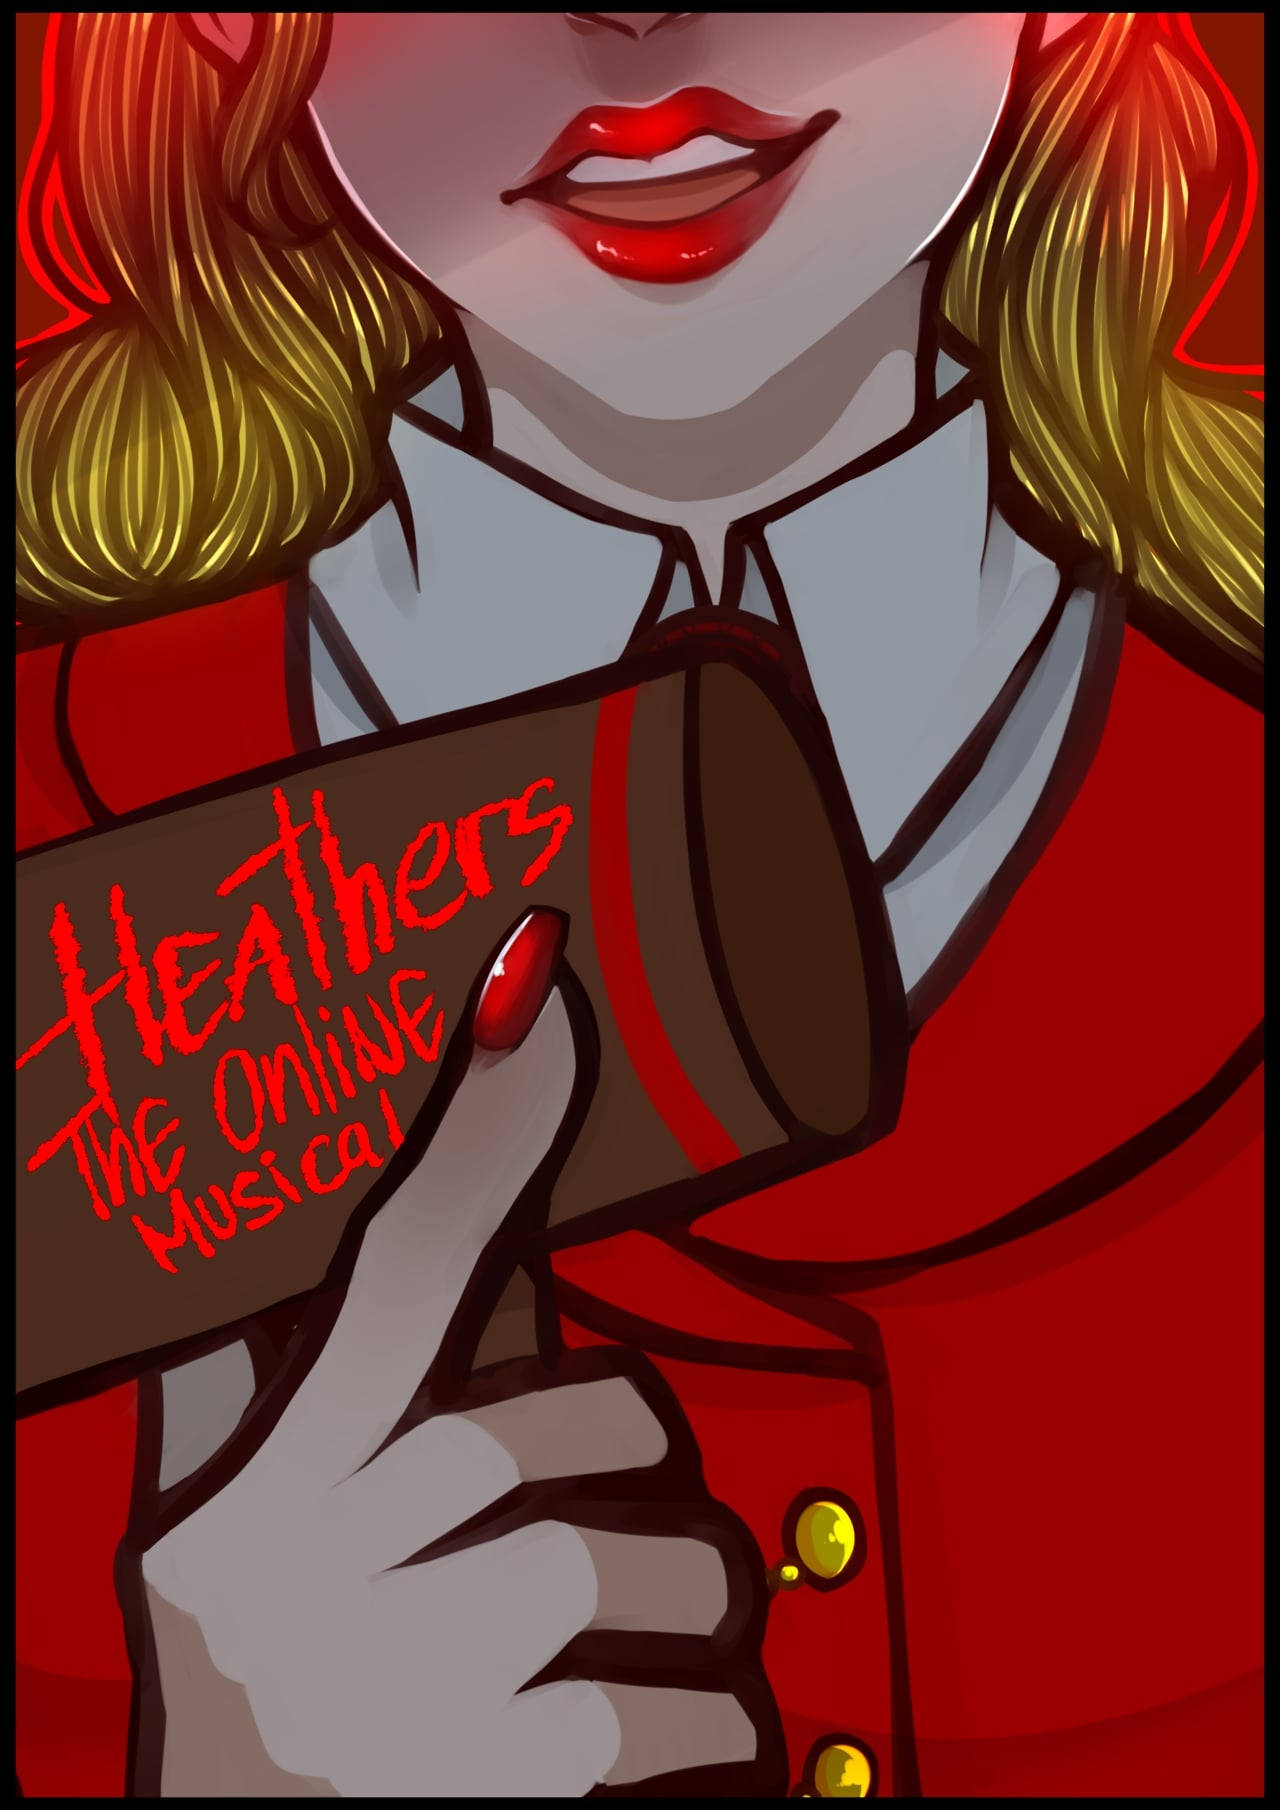 Tapet med Heathers Online Musical plakat: Se dette stærke, farverige tapet forsynet med de stærke farver fra Heathers Online Musical. Wallpaper